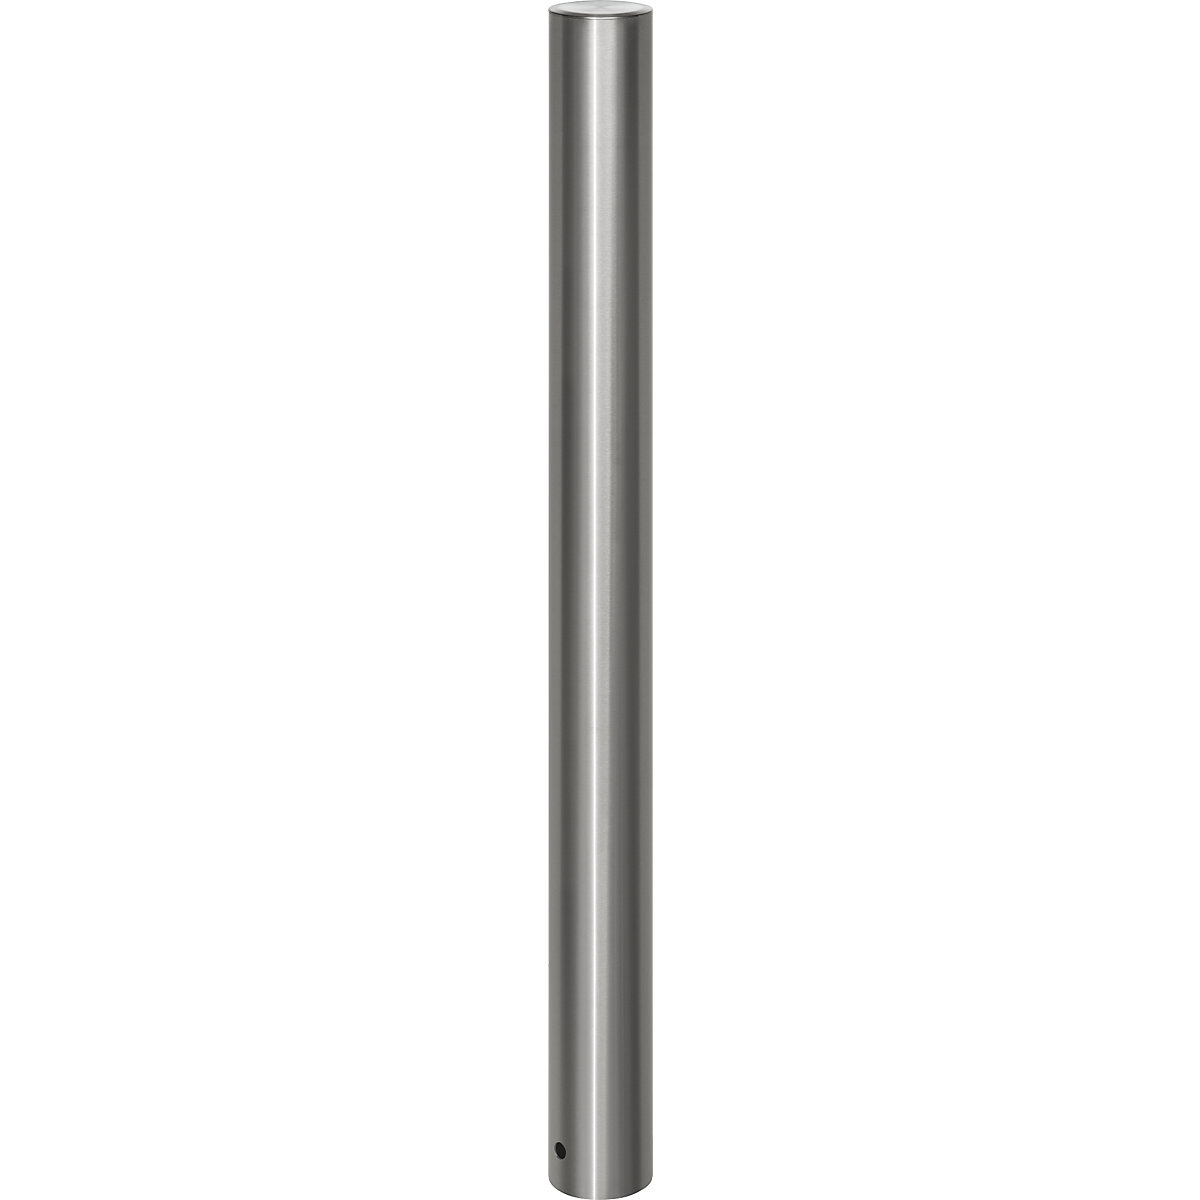 Stâlp de blocare din inox, cu cap plat, tub de podea pentru turnare în beton, Ø 102 mm